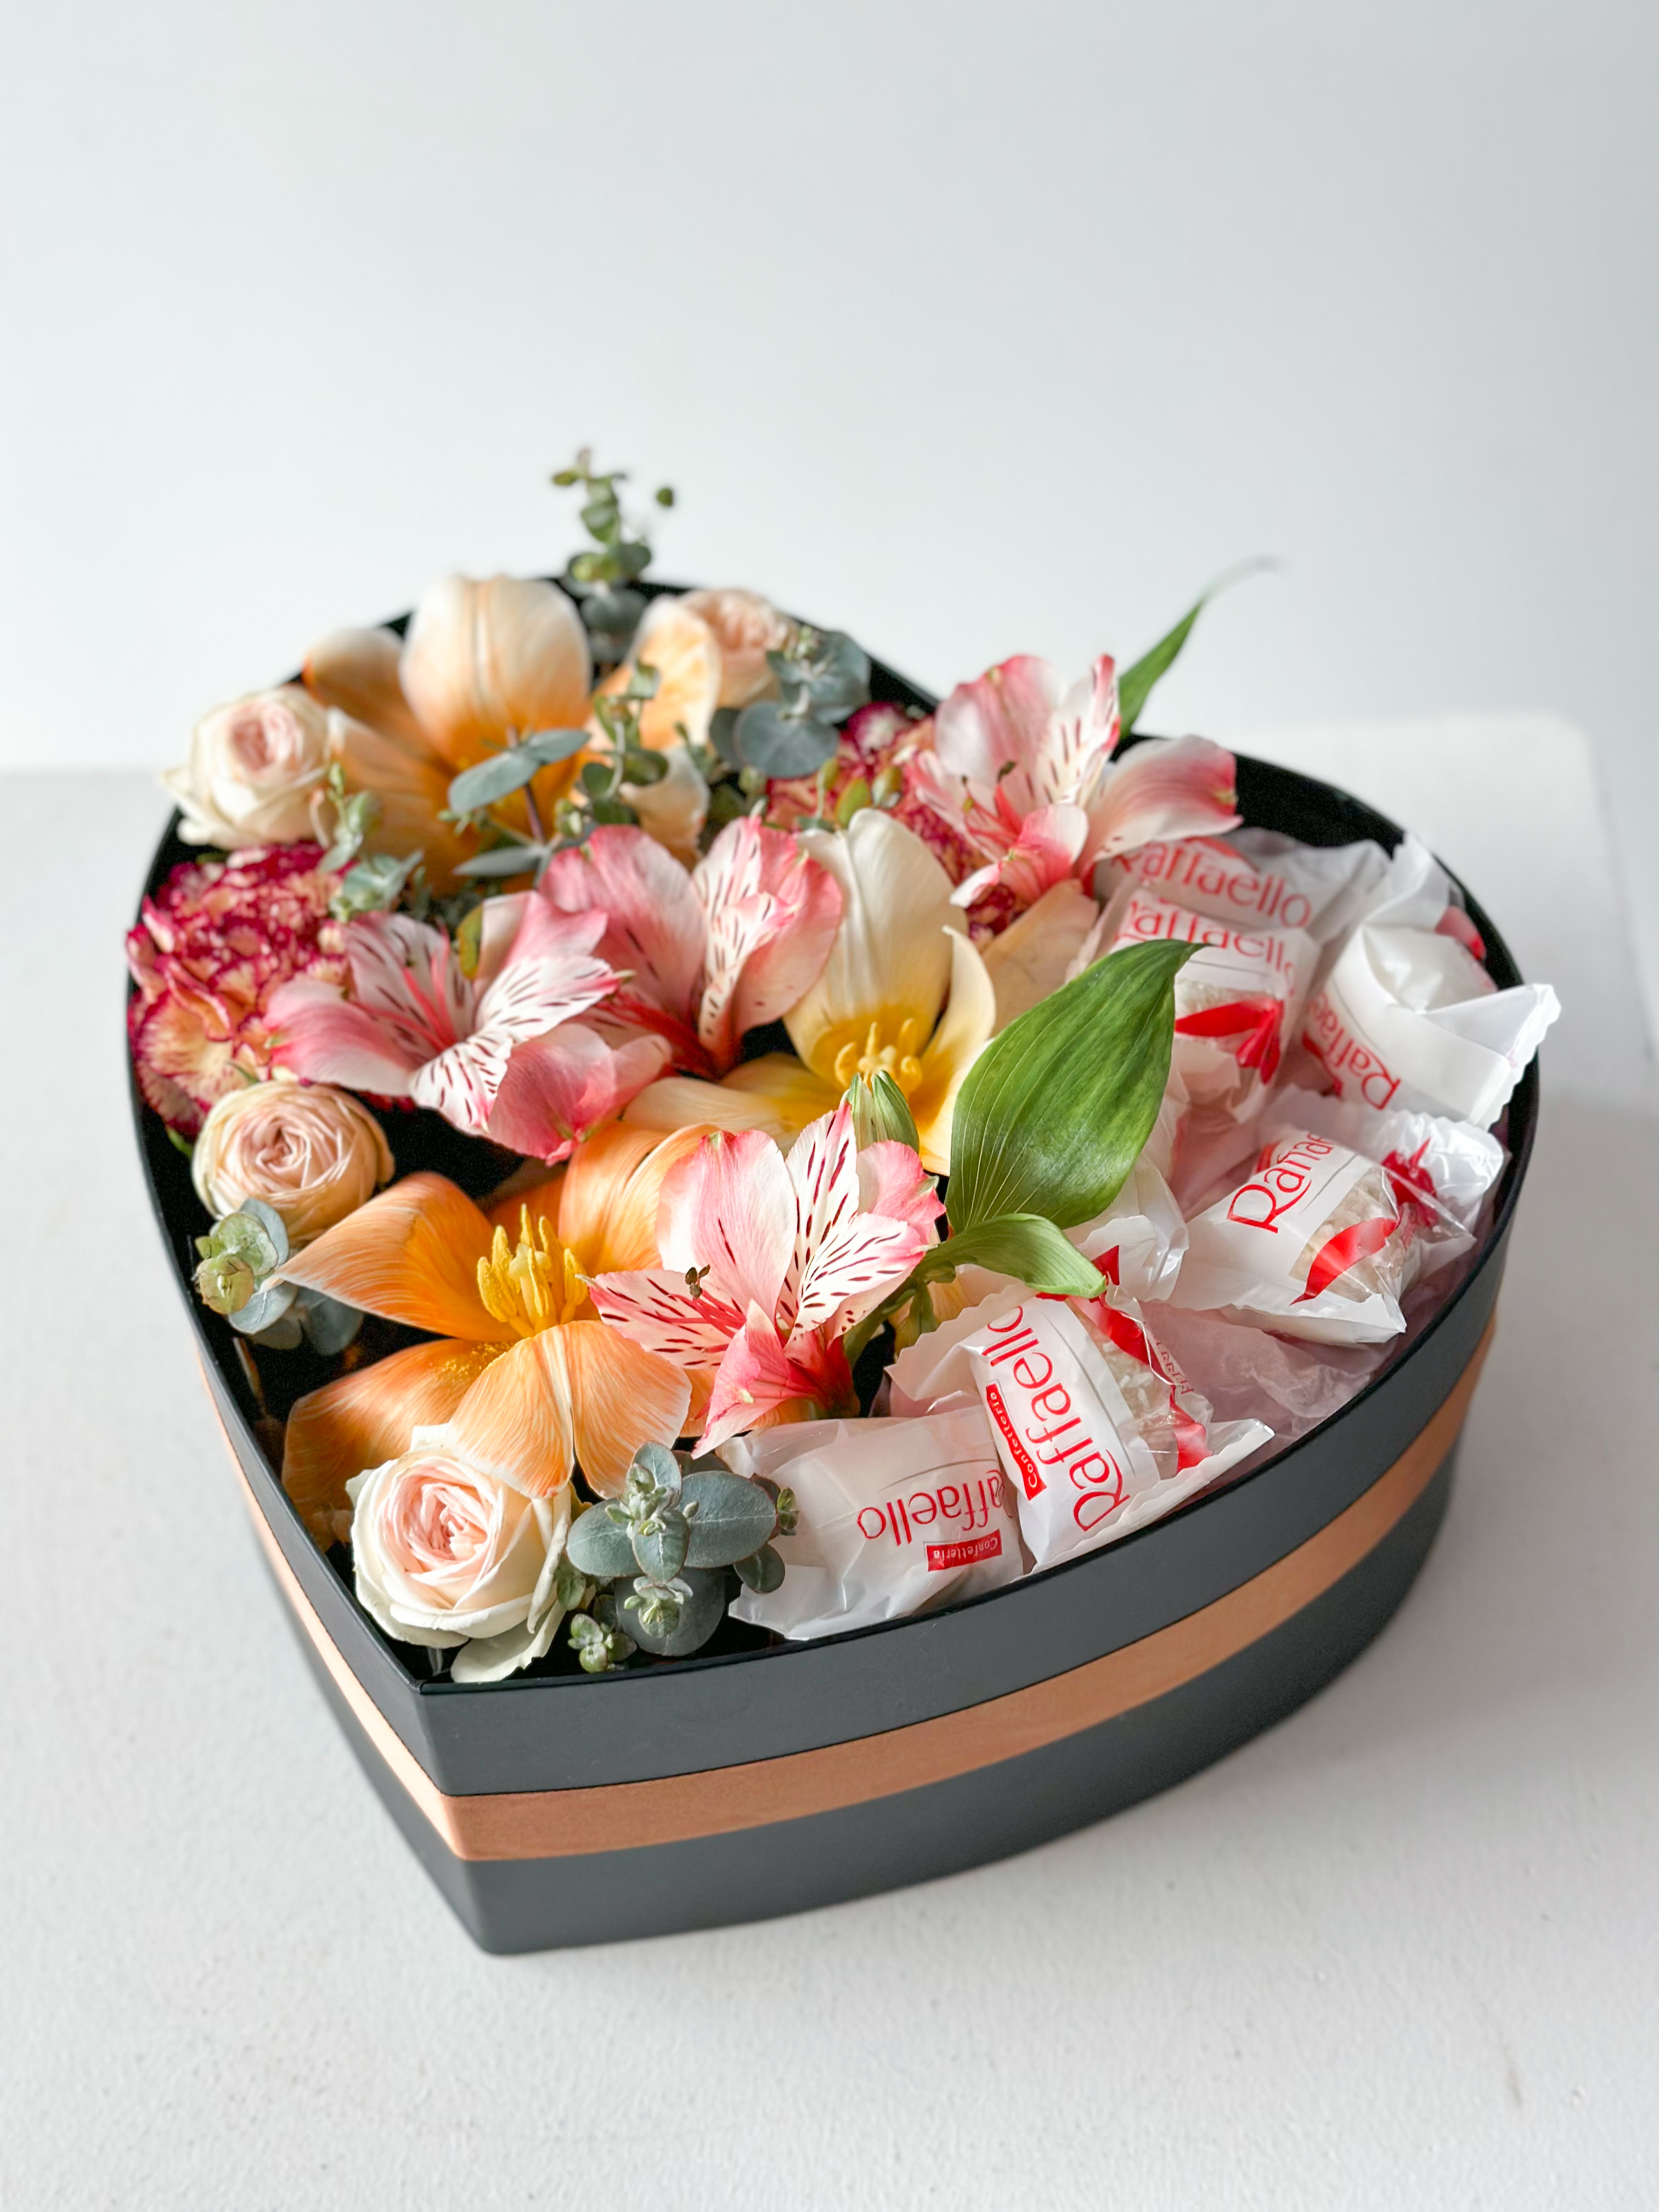 Композиция "Soul" веcенние цветы и Raffaello в коробке в форме сердца